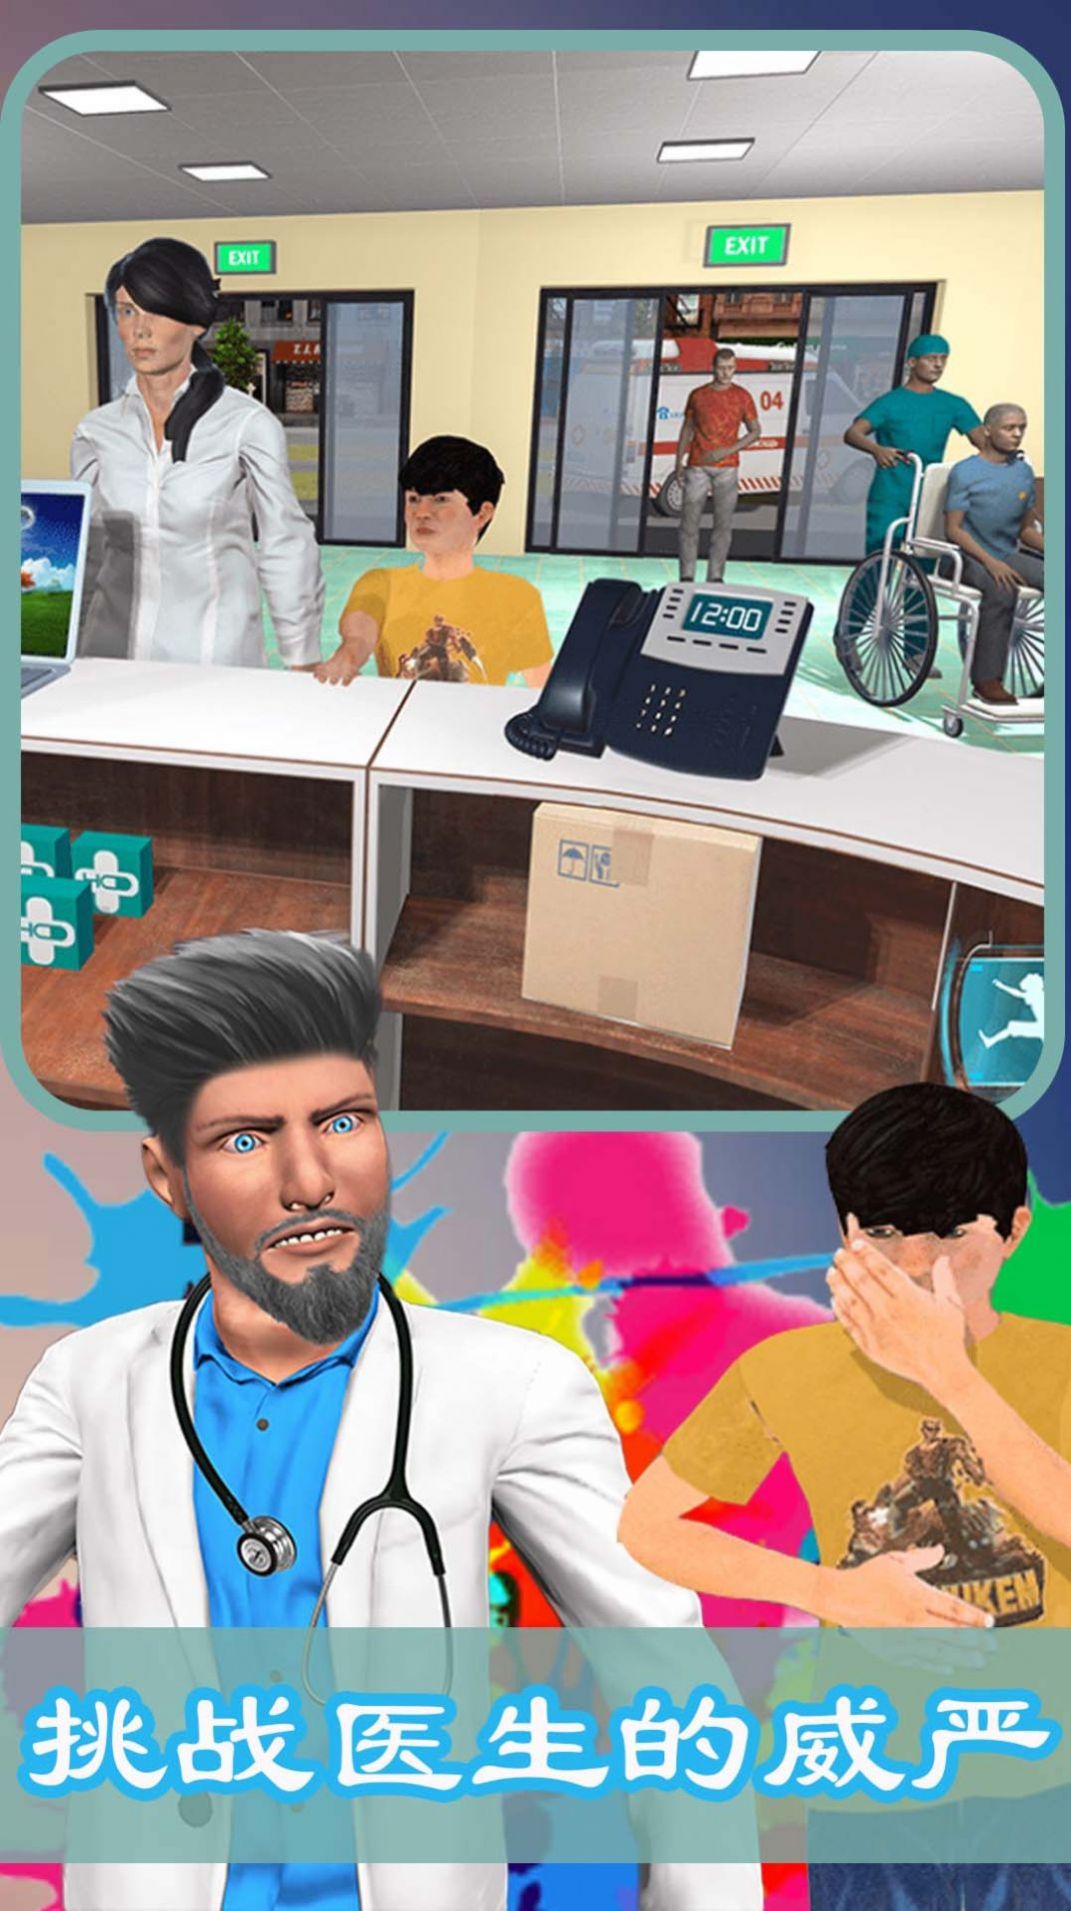 医院模拟经营游戏安卓版下载 v1.3